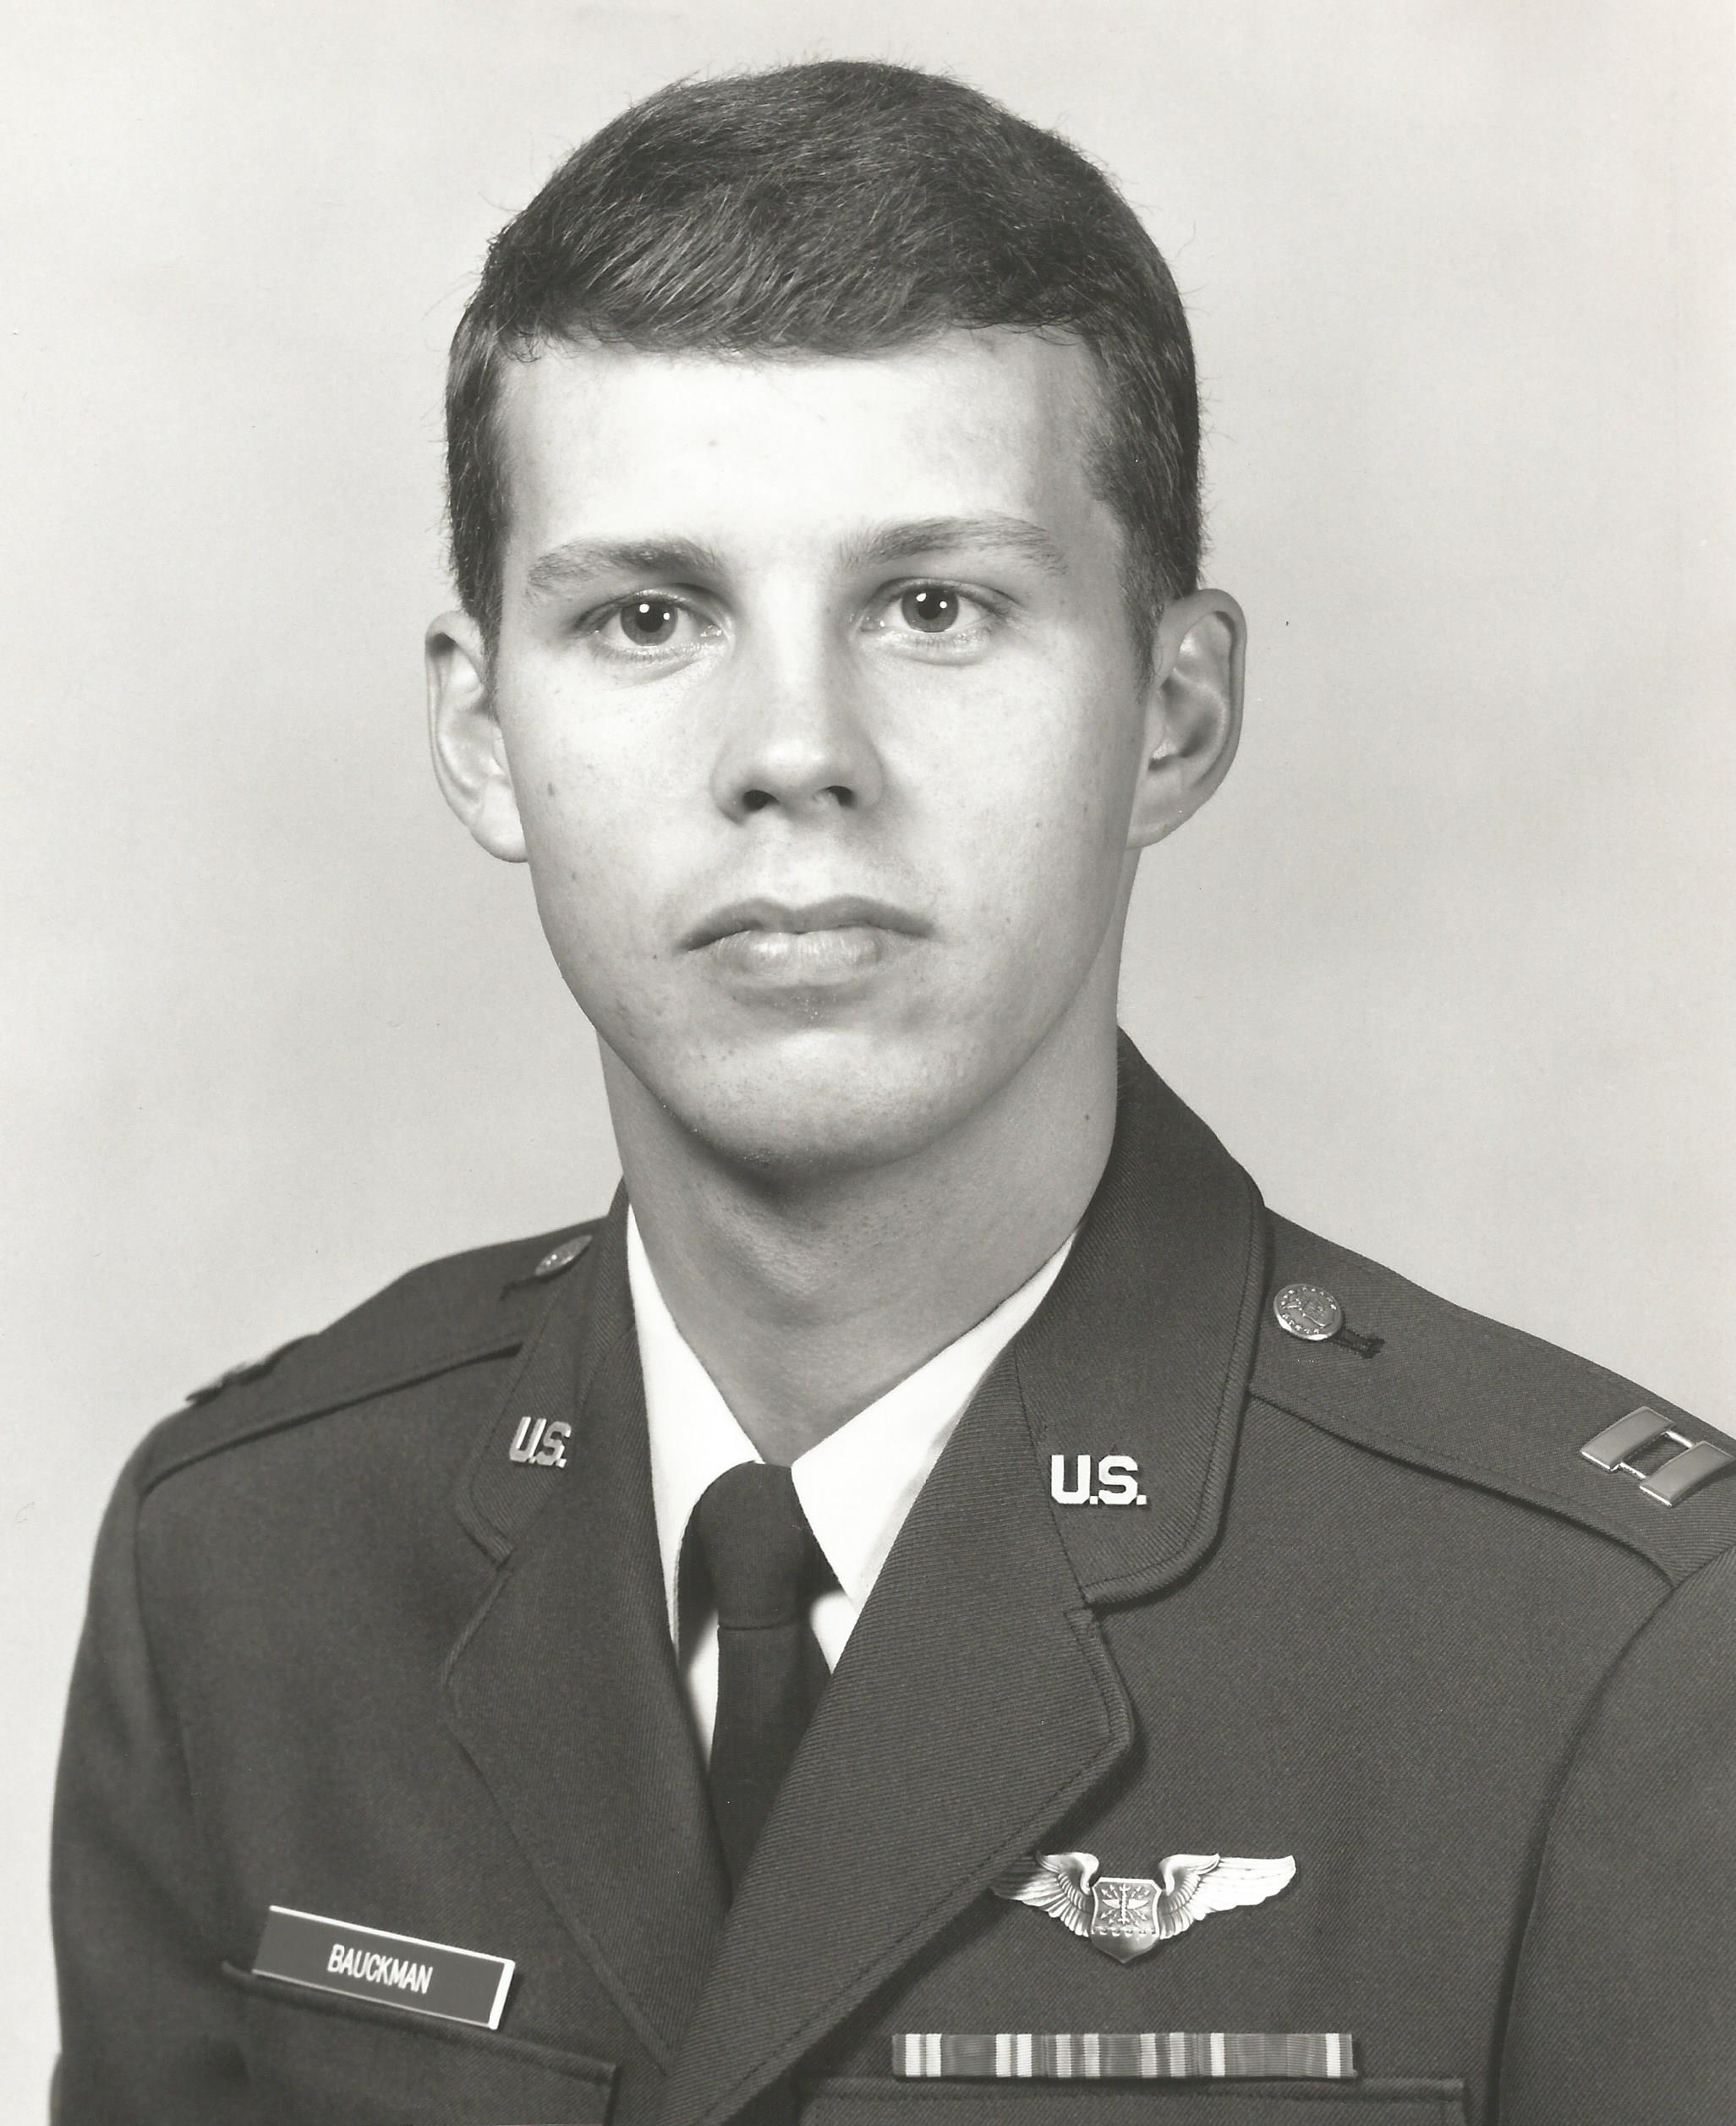 Tom Bauckman in uniform